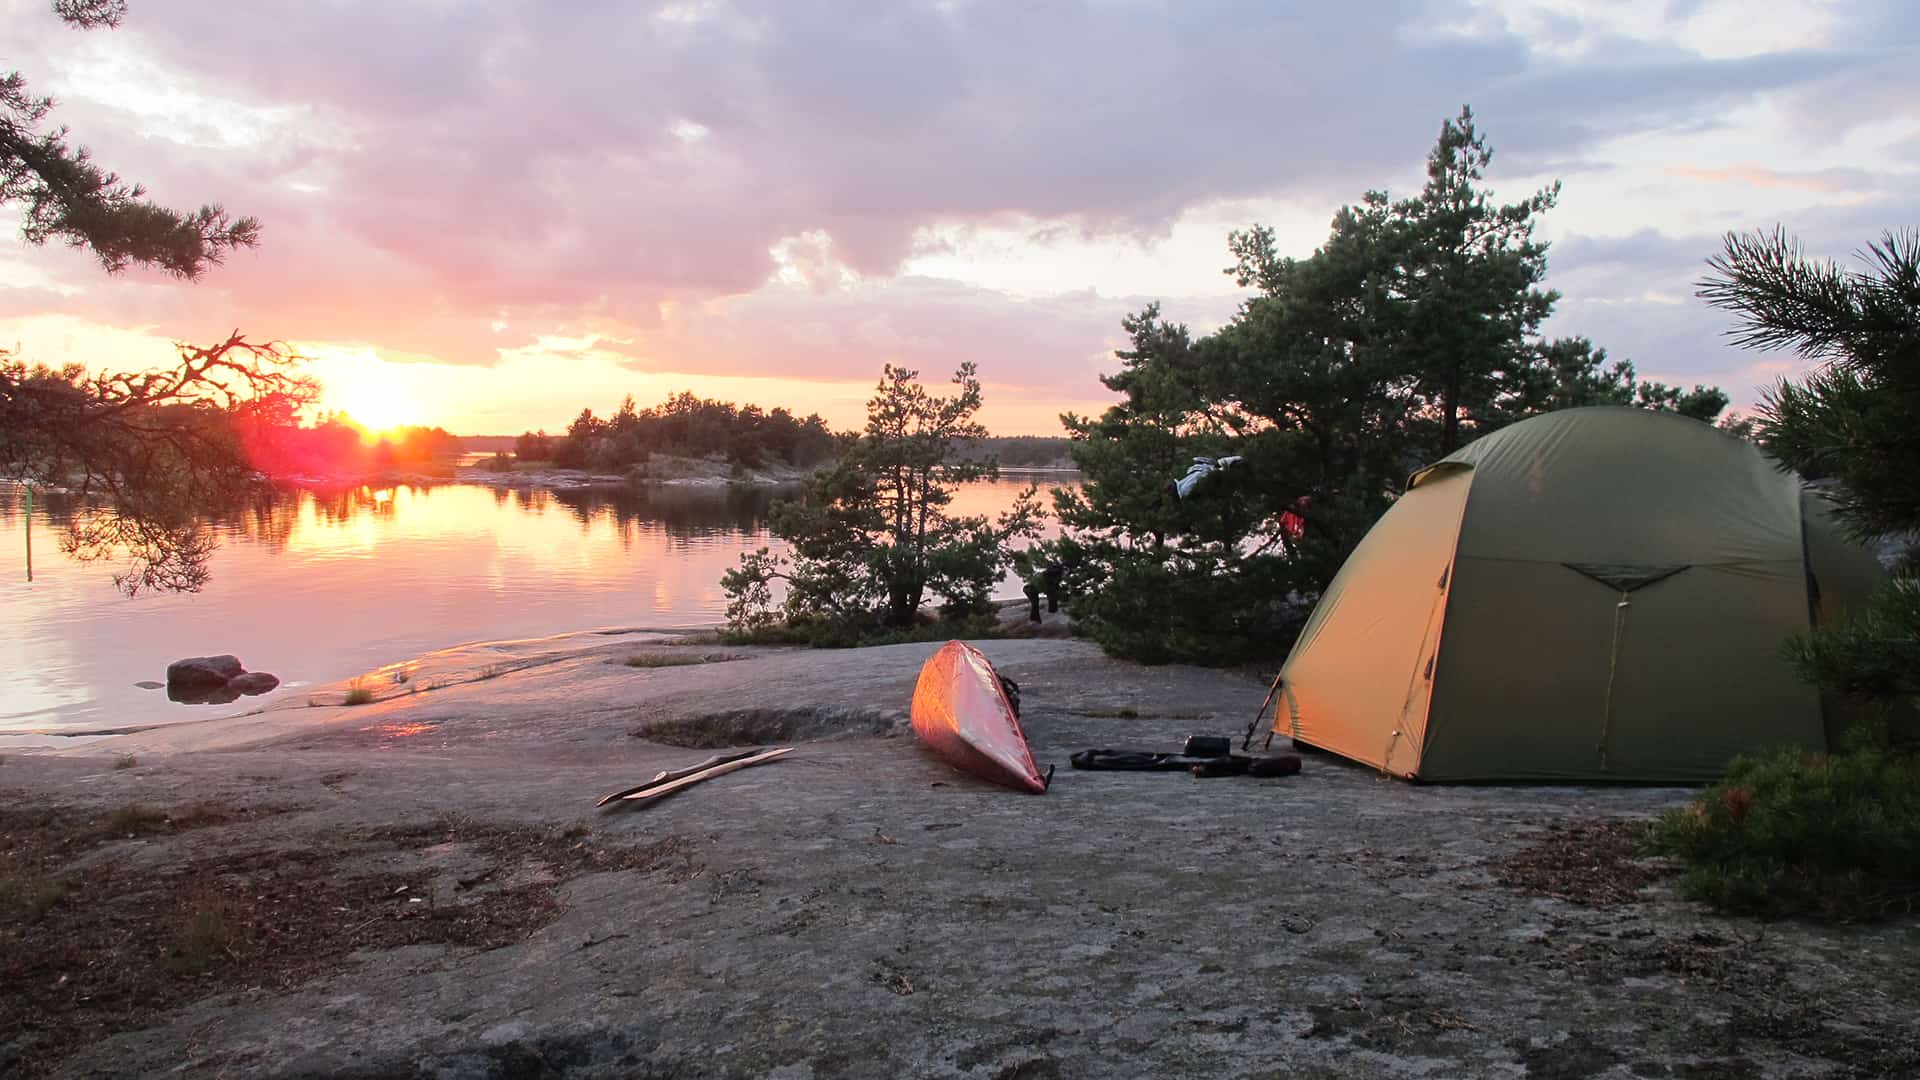 Skandinavien rundt i kajak, foredrag, Erik B. Jørgensen, lejr og solnedgang, den svenske skærgård